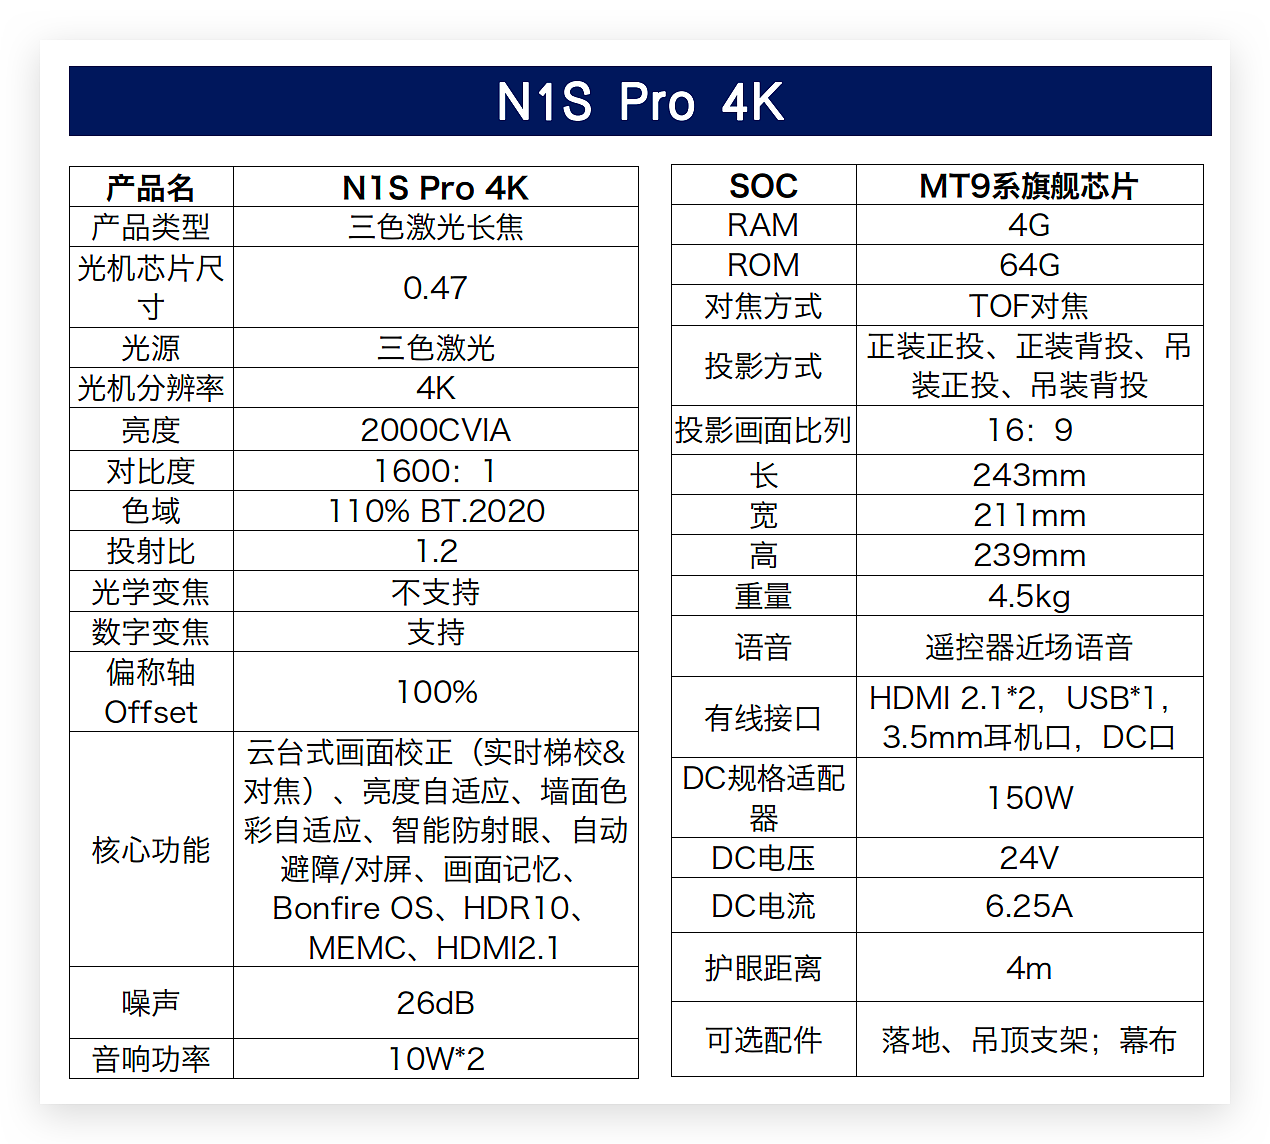 【IT之家评测室】坚果 N1S Pro 4K 体验：除提亮升级 4K 外，正面挑战散斑解决散斑 - 33